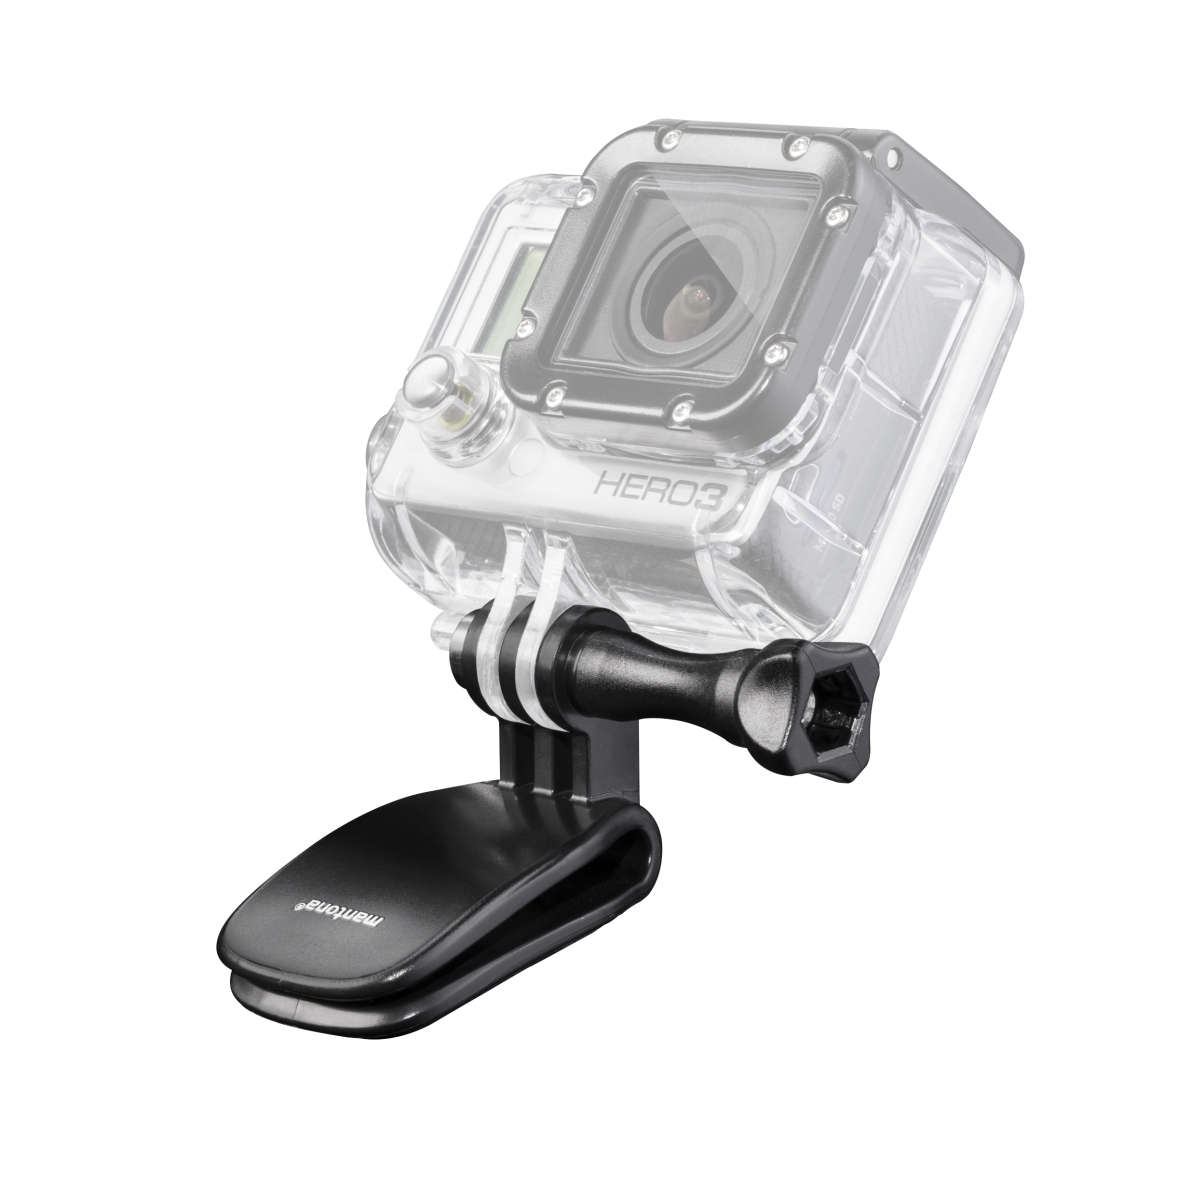 Mantona Mini-Clamp incl. screw long for GoPro Hero